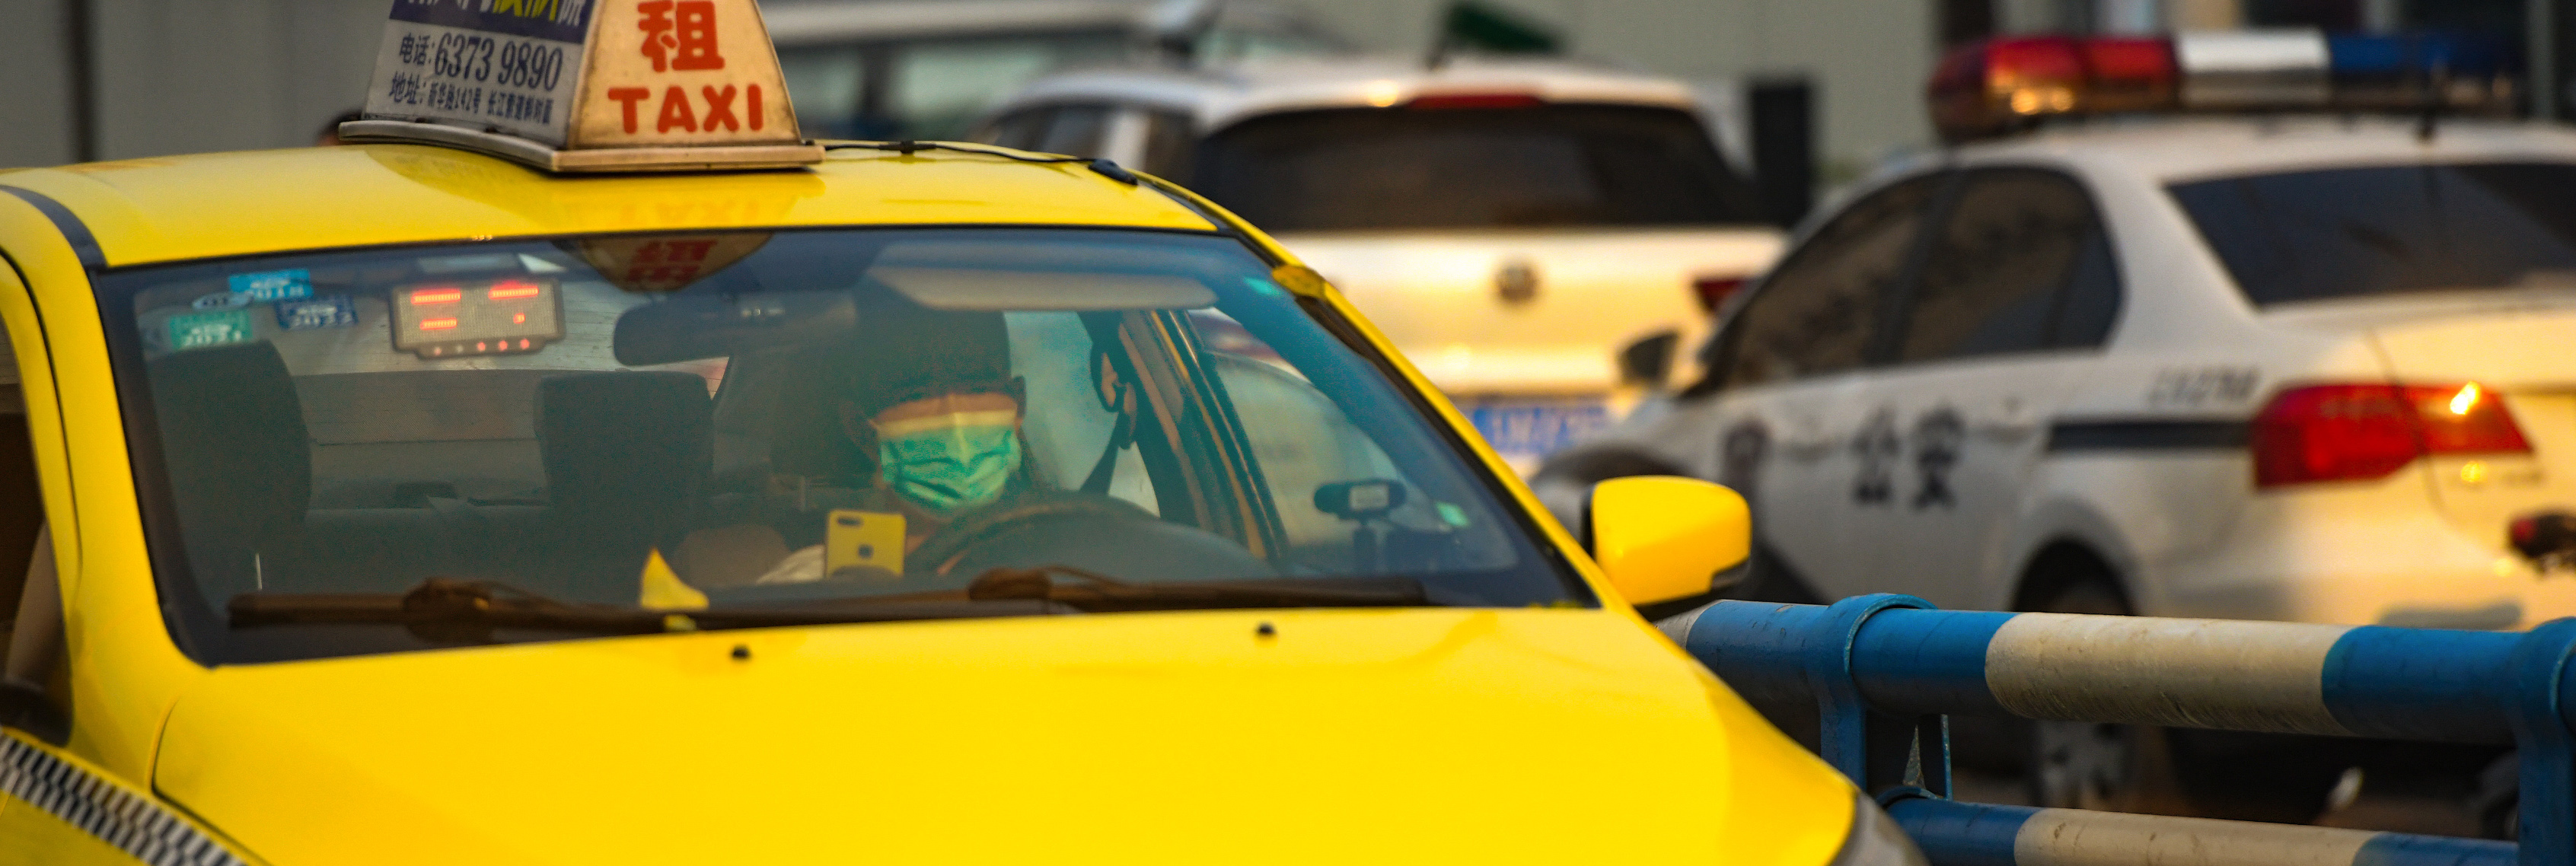 8月6日,在江北区盘溪二支路,一名出租车司机迎着阳光驾驶着车辆前行